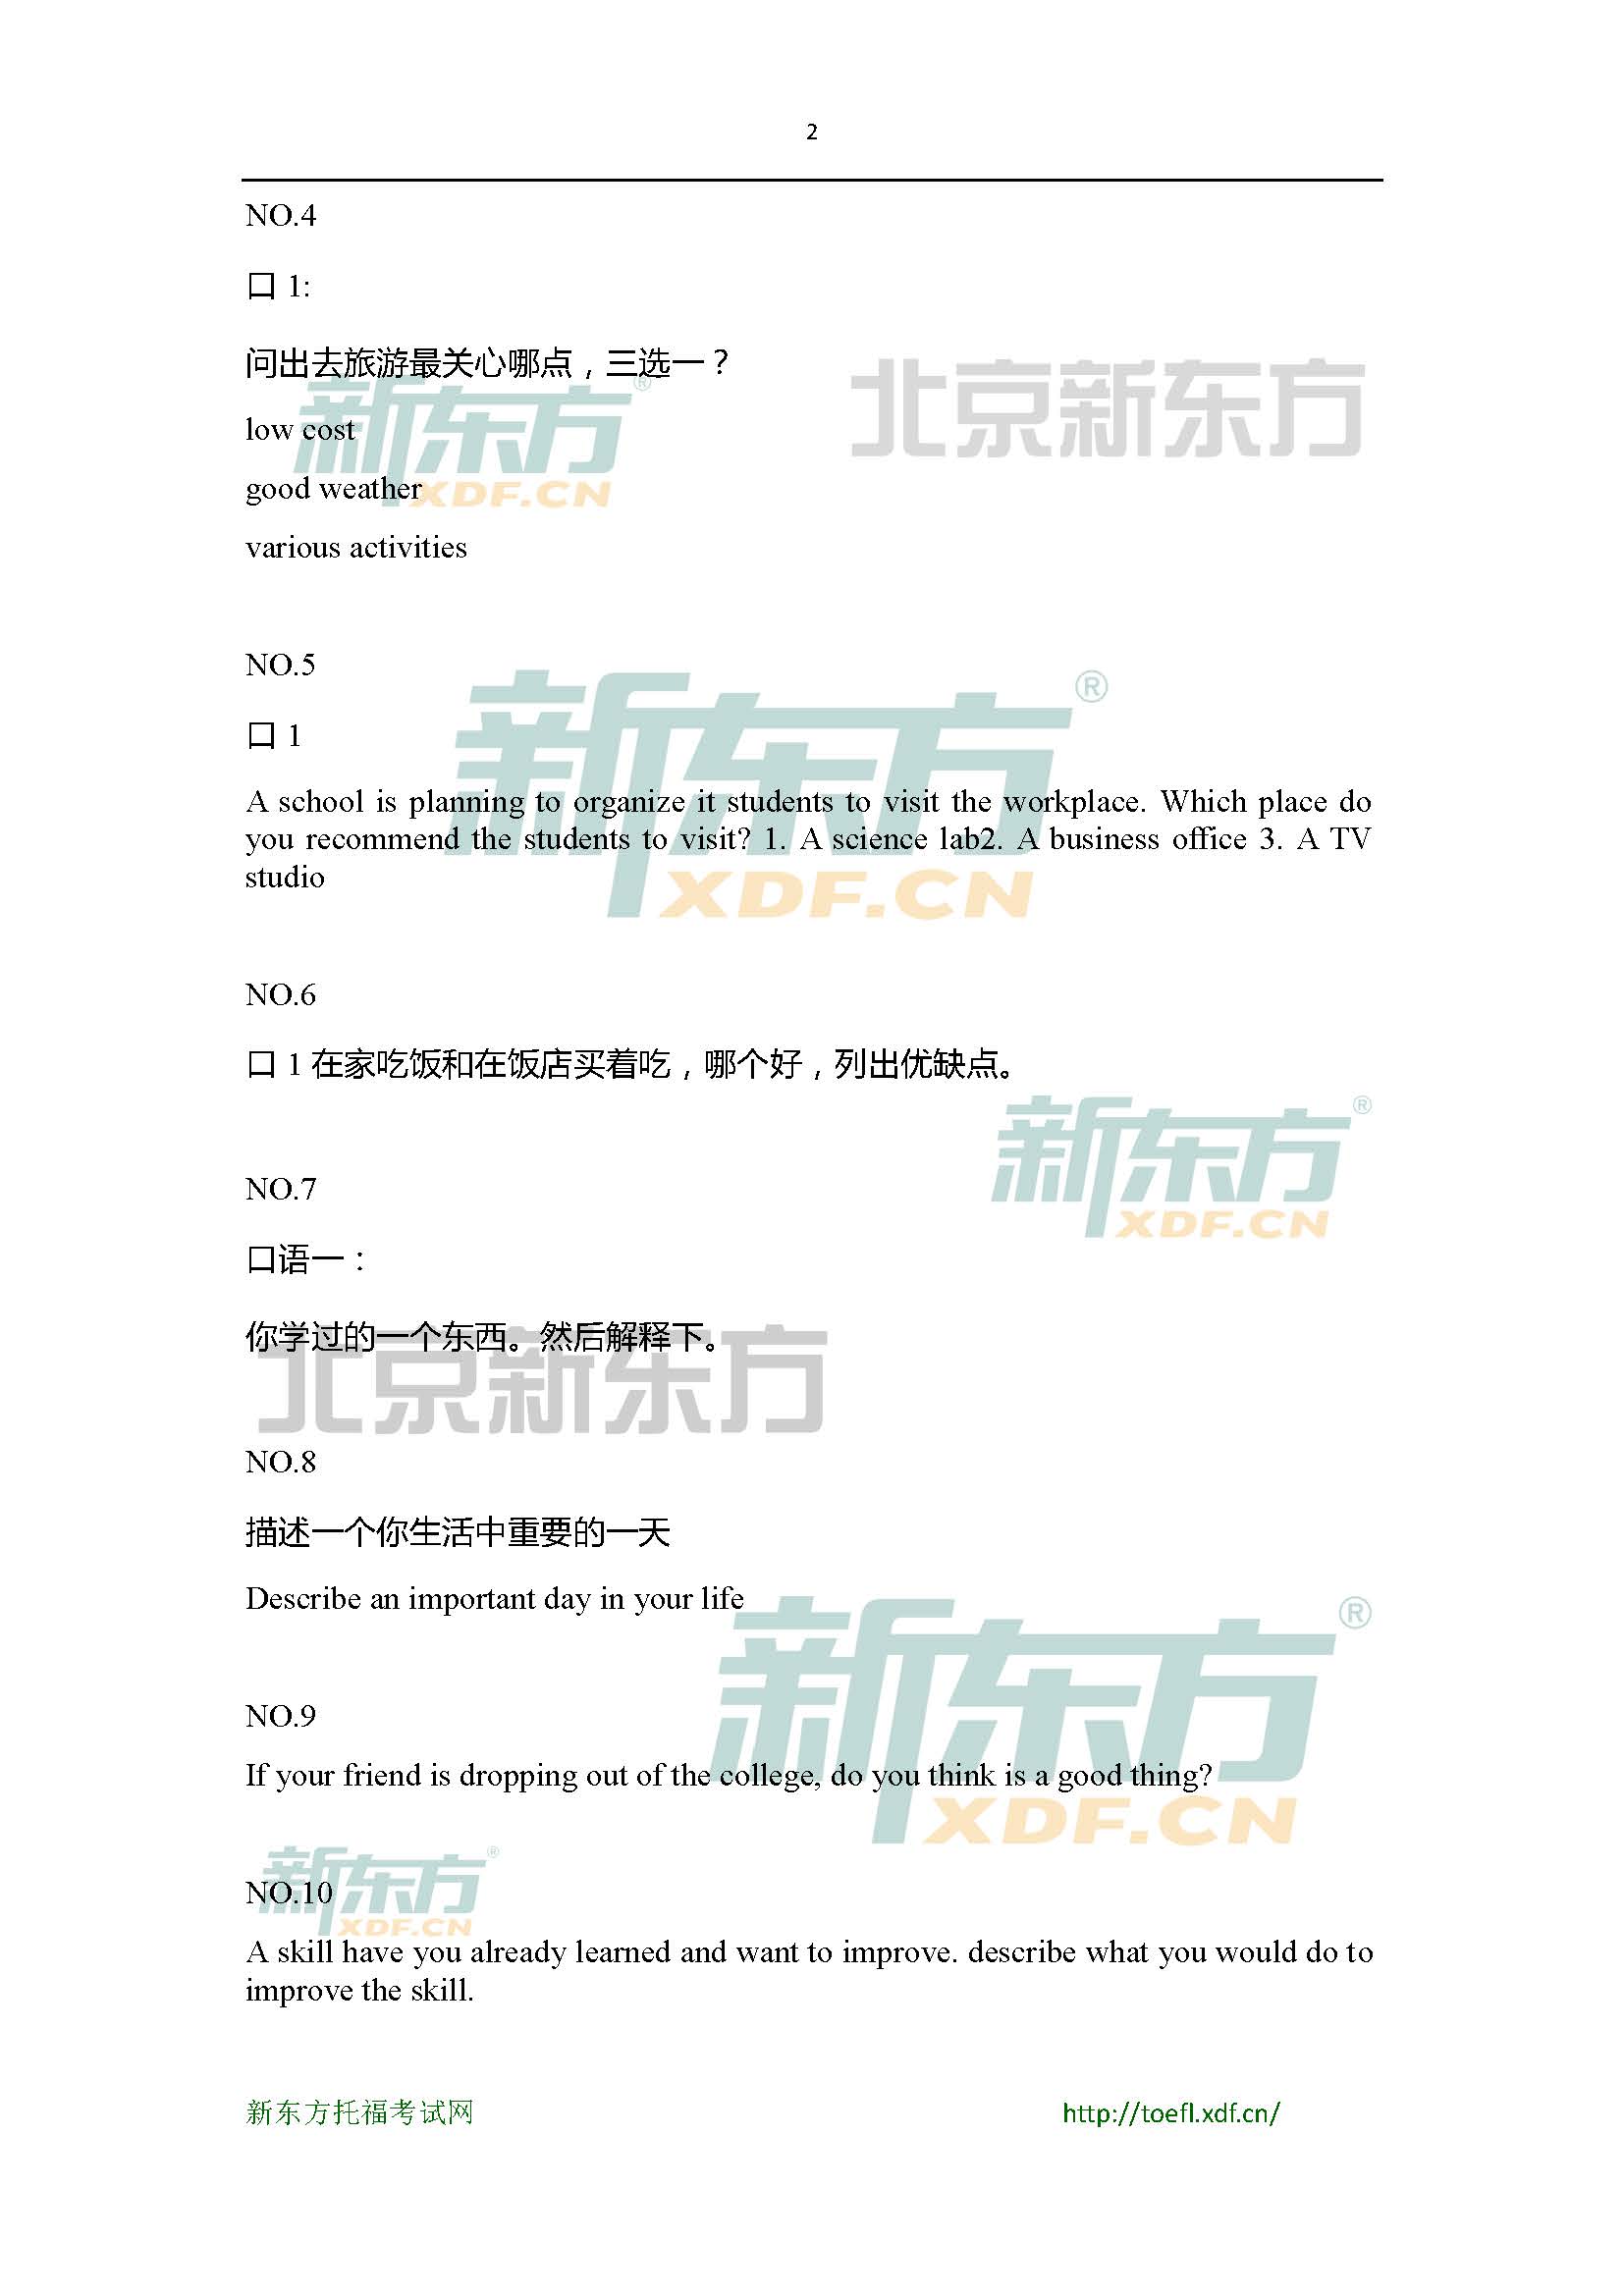 2015年4月18日托福口语小范围预测(12套题)